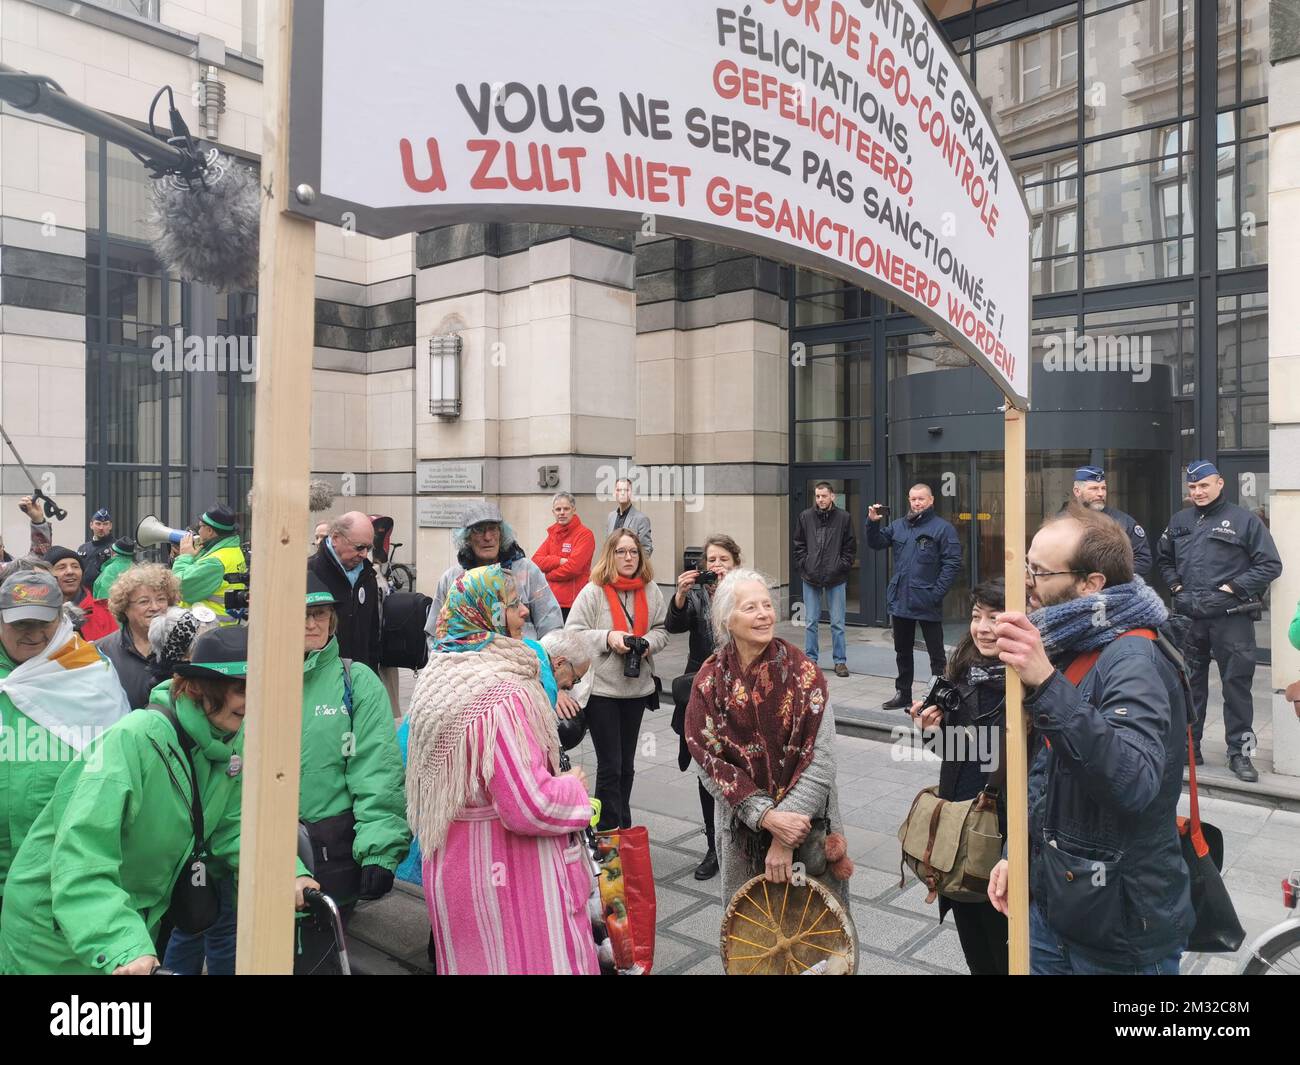 L'illustration montre une action de protestation de diverses organisations sur le revenu garanti pour les personnes âgées, lundi 17 février 2020 à Bruxelles. BELGA PHOTO SANDRINE PUISSANT Banque D'Images